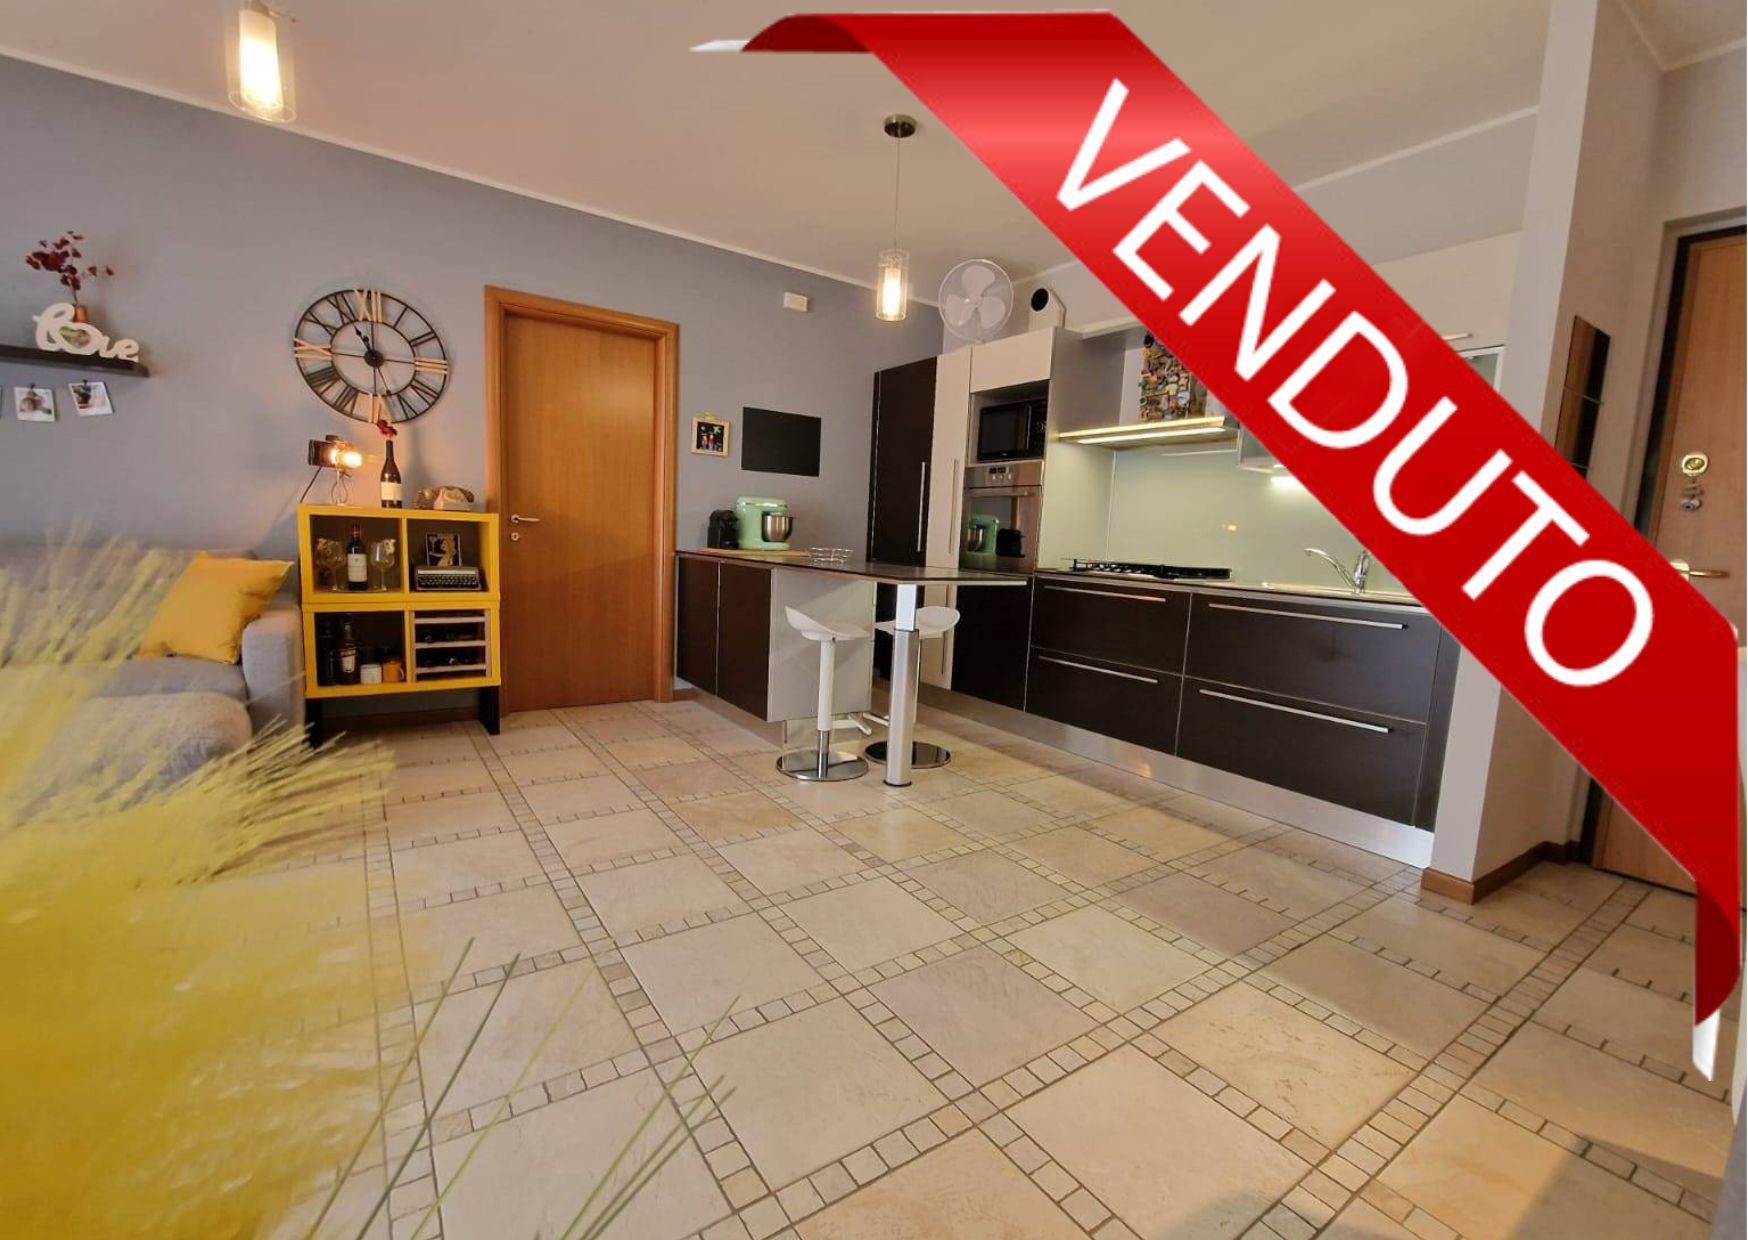 Appartamento in vendita a Ranica, 2 locali, prezzo € 133.000 | CambioCasa.it